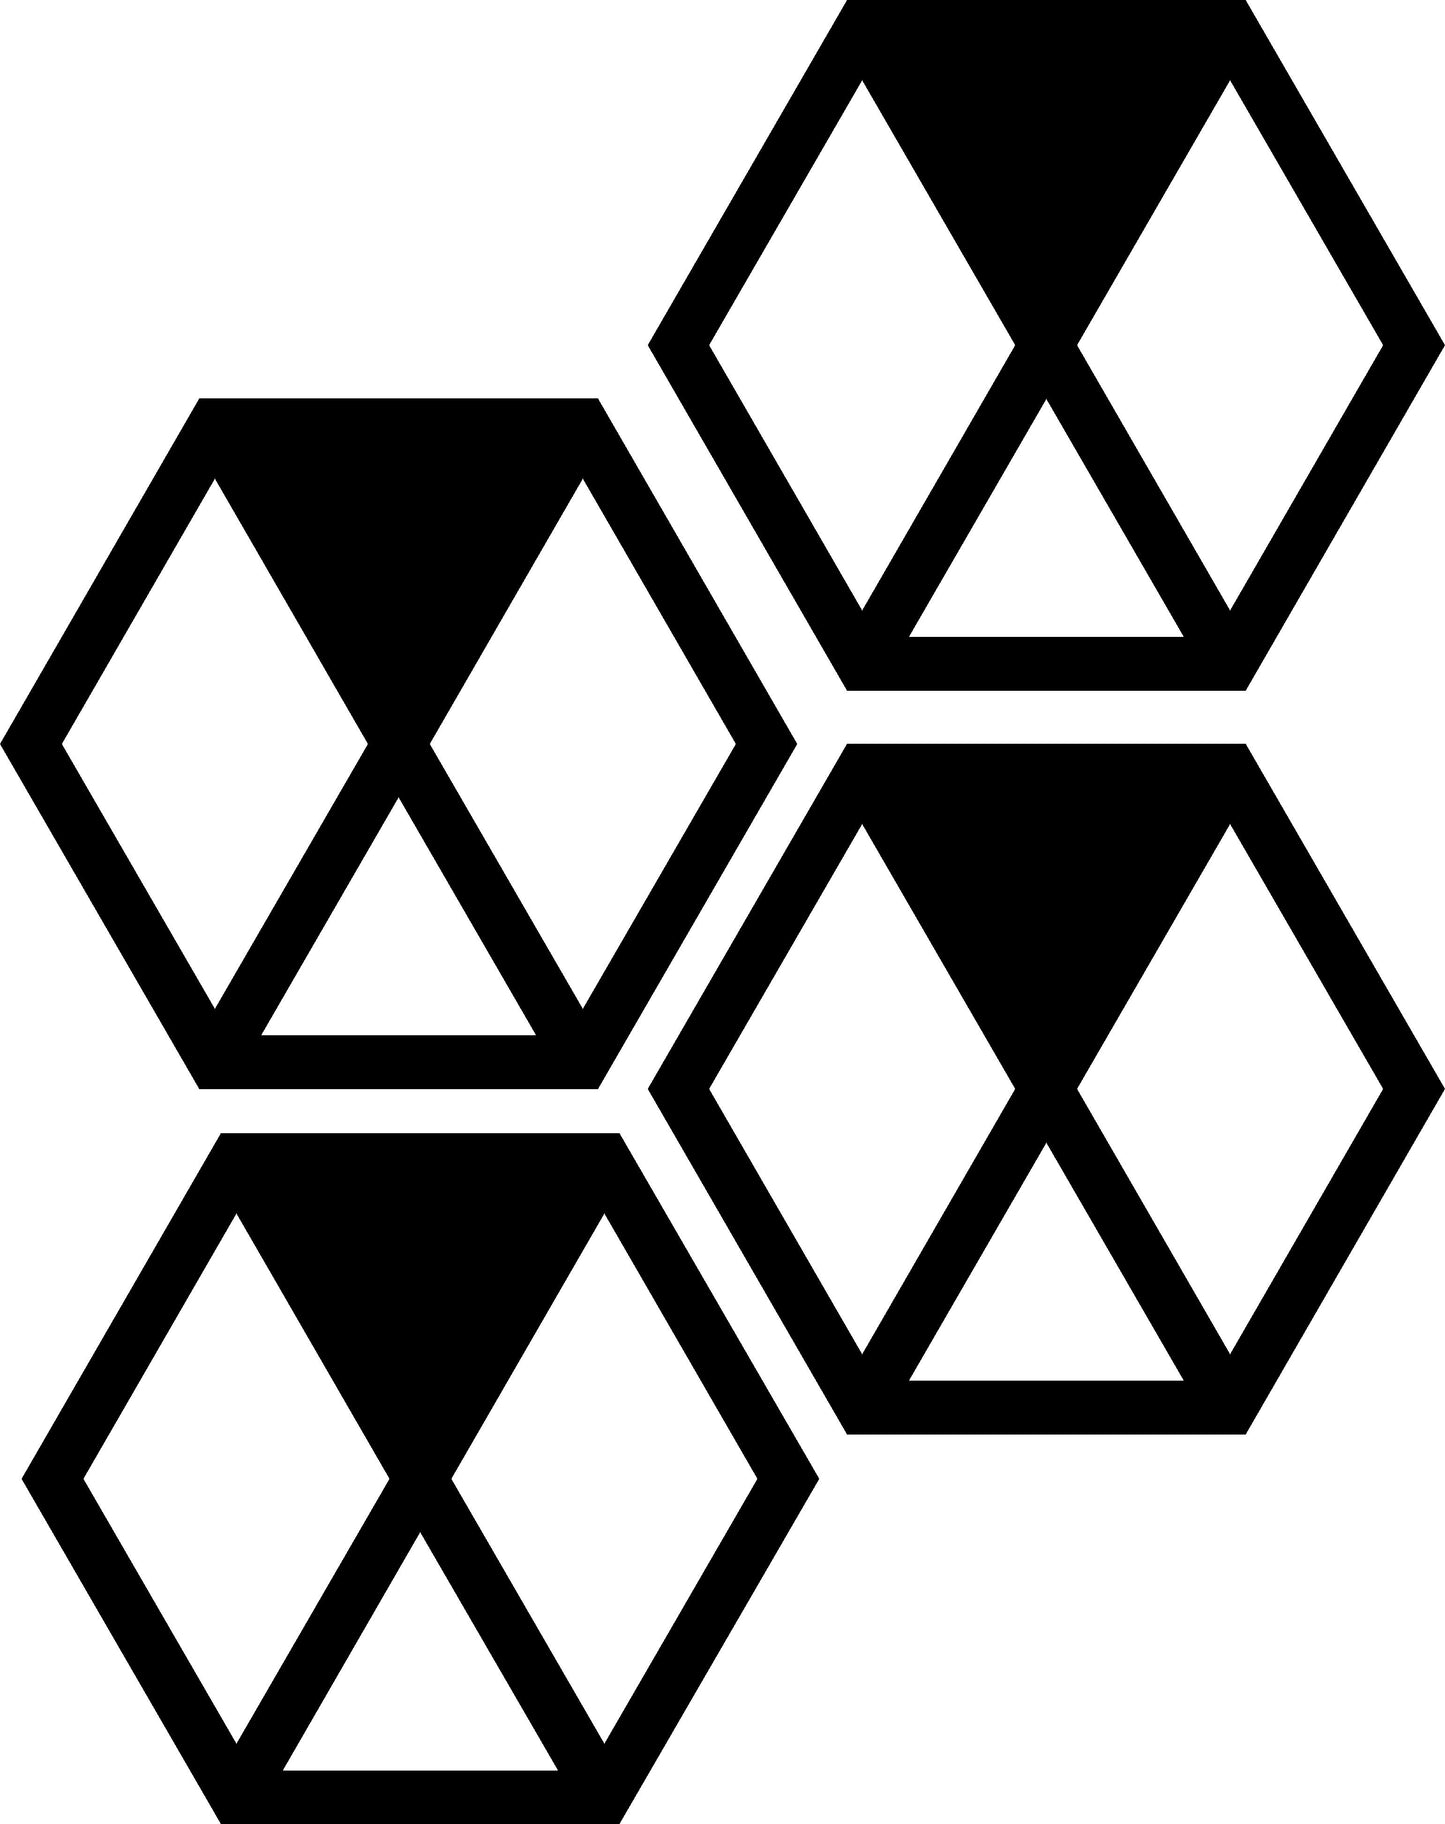 Hexagonal Design 3 (Medium)